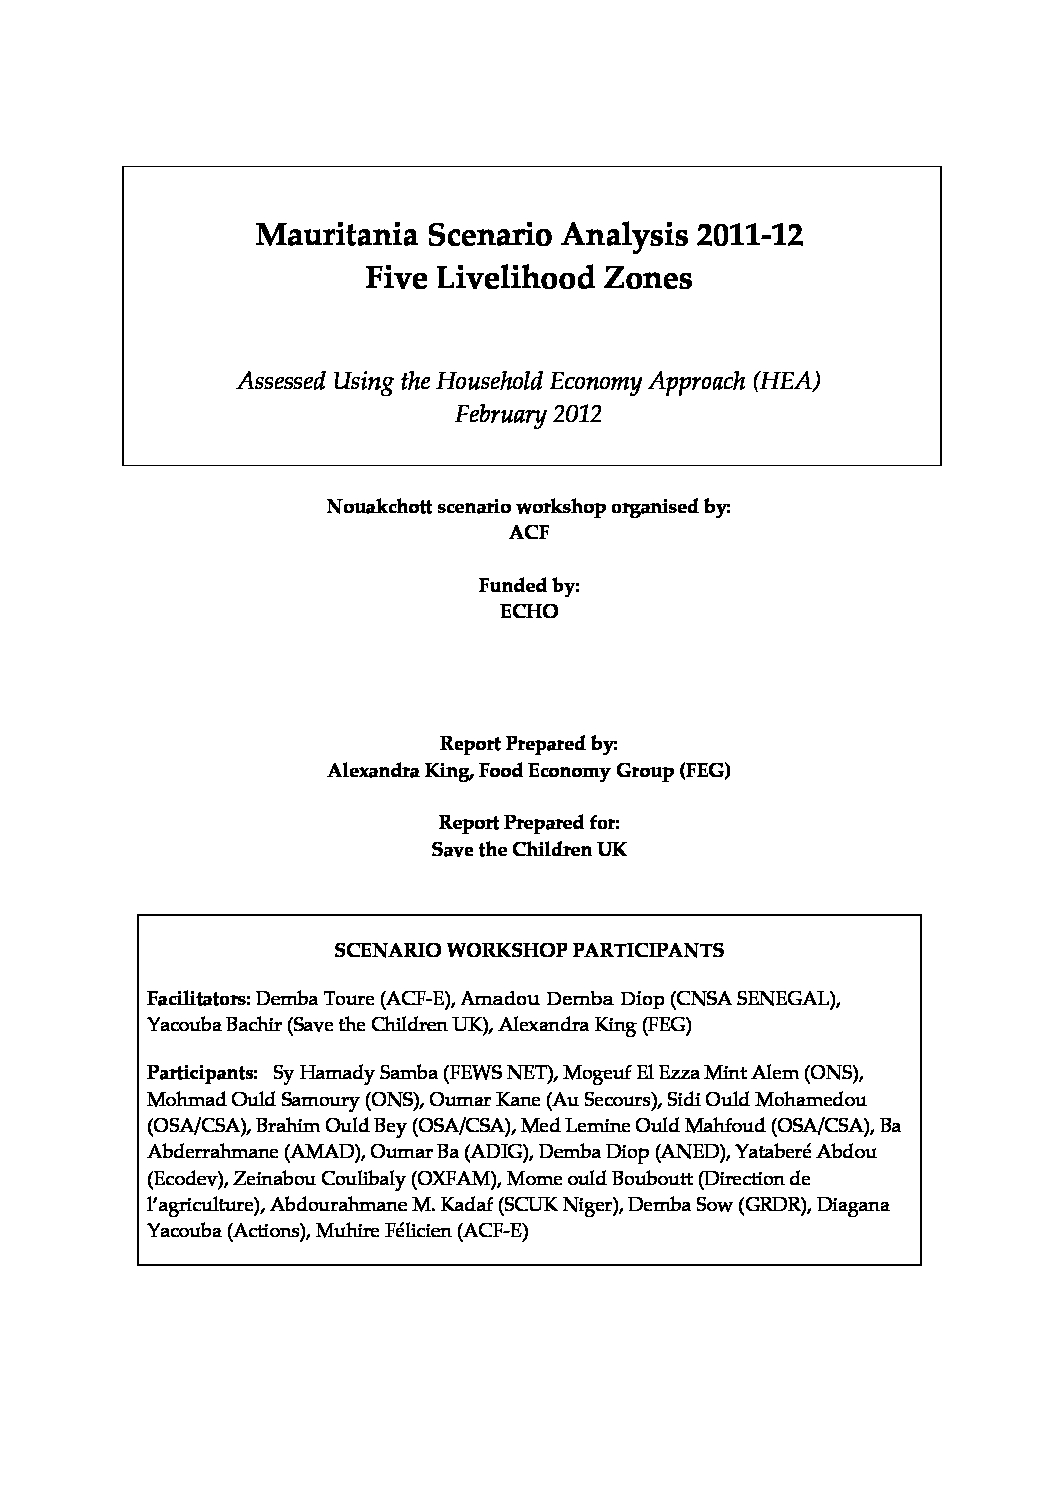 Outcome Analysis Report - Mauritania - February 2012